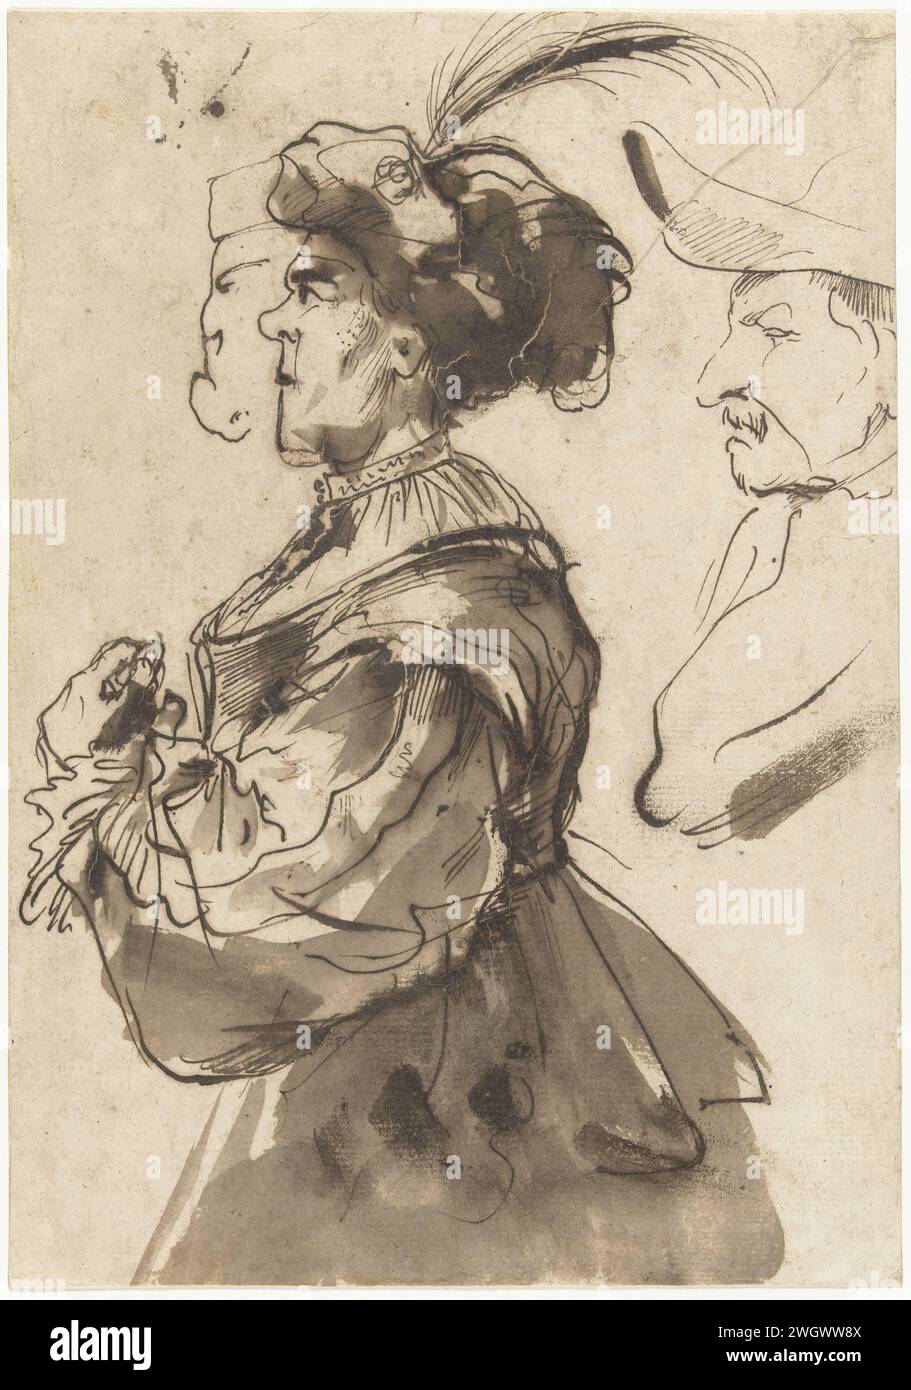 Karikatur einer alten, gekleideten Frau, Pier Francesco Mola, 1622 - 1666 Zeichenpapier. Tintenstift-/Pinselkarikaturen (menschliche Typen). Alte Frau. Hässliche, alte Frau, verdammt Stockfoto